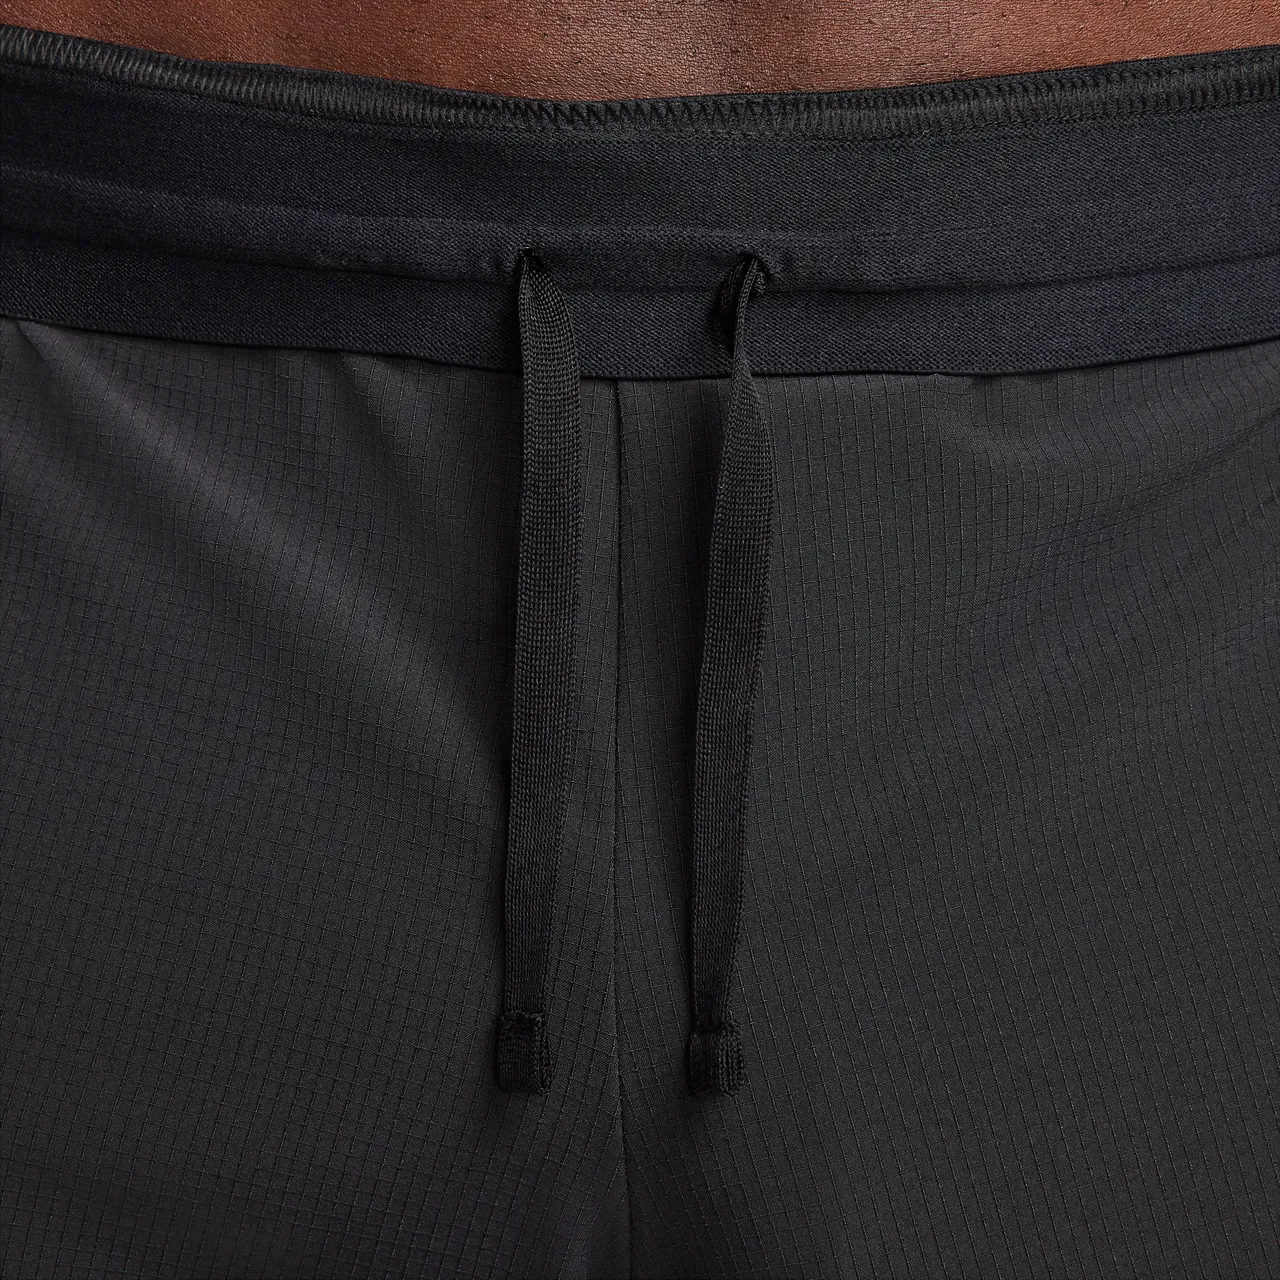 Nike Flex Rep Dri-FIT niet-gevoerde fitnessshorts voor heren (13 cm) - Zwart